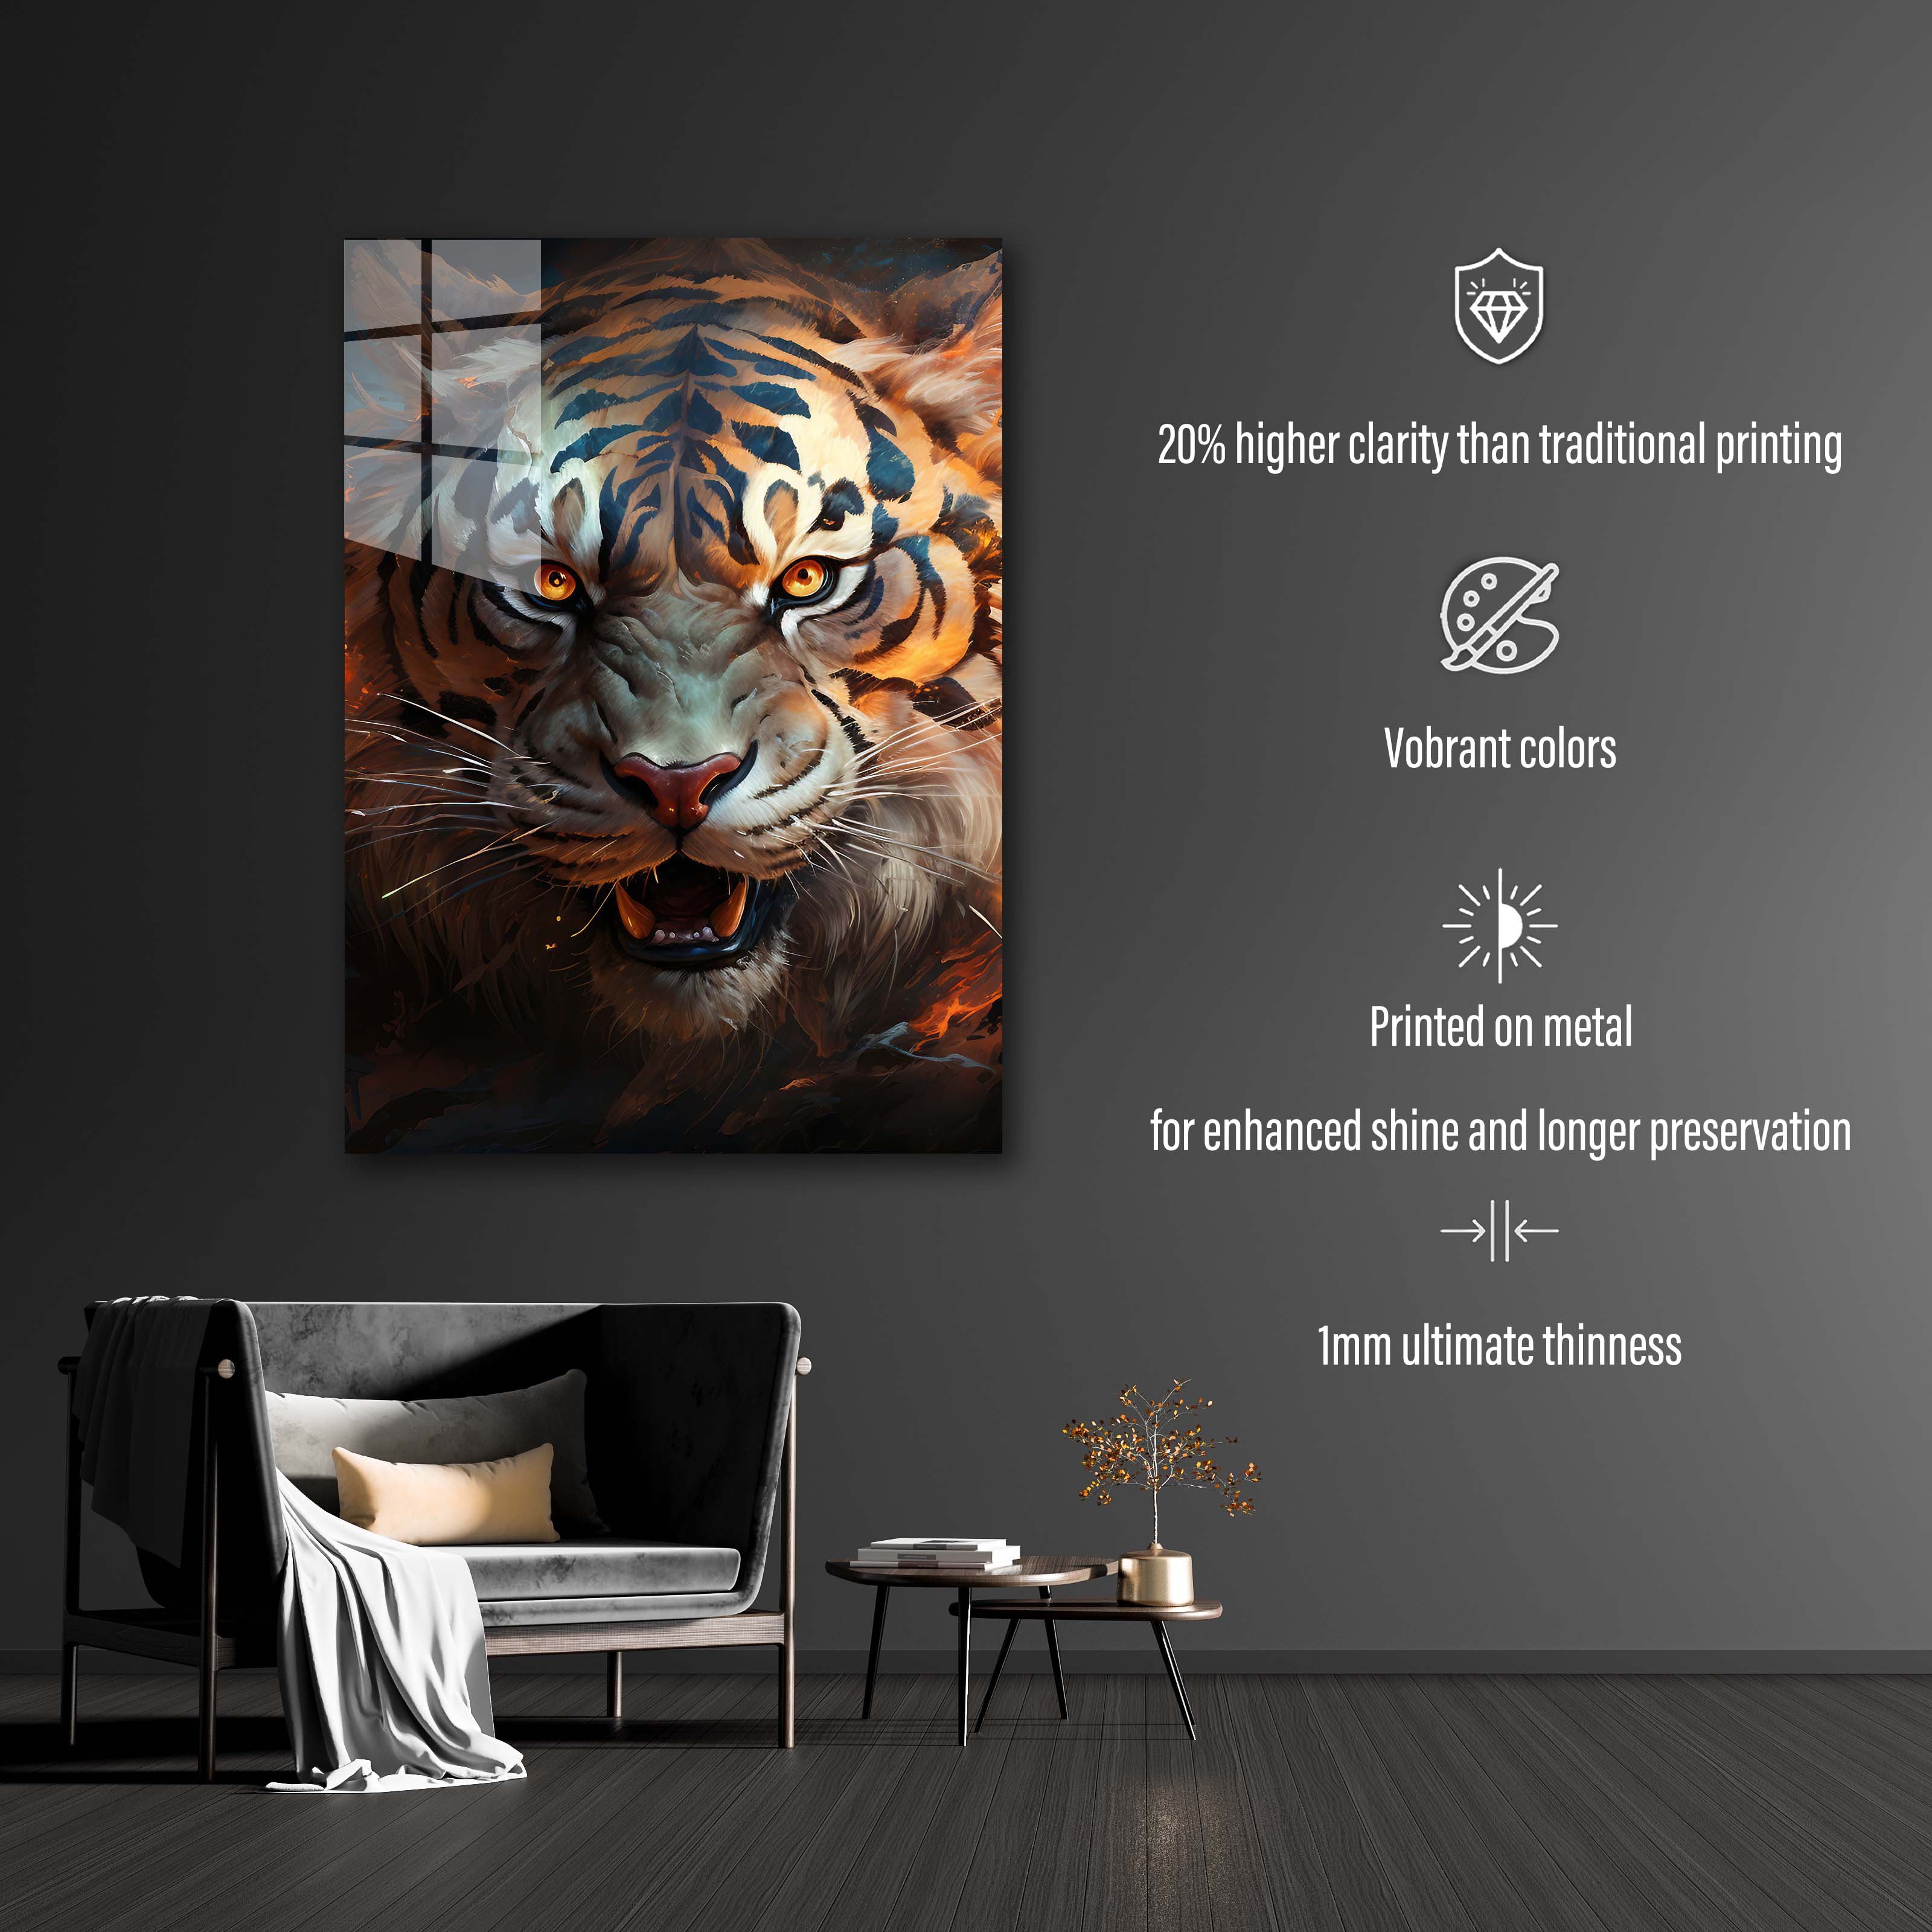 Eyes of the Tiger-designed by @Destinctivart